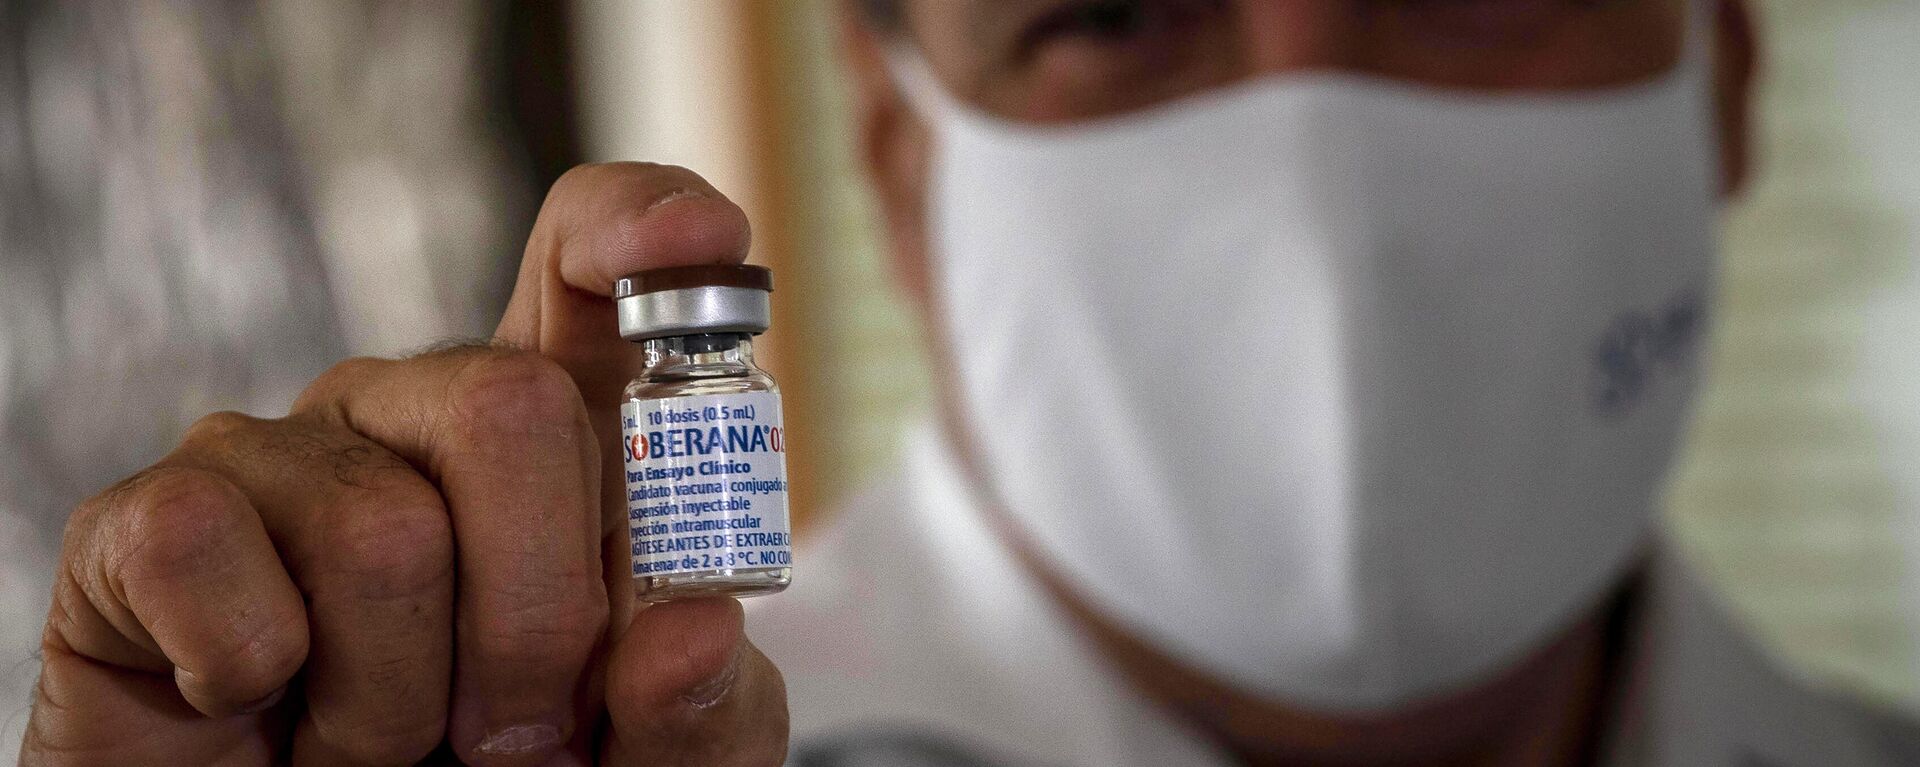 Un médico sostiene la vacuna cubana Soberana 02 contra COVID-19 - Sputnik Mundo, 1920, 11.08.2021